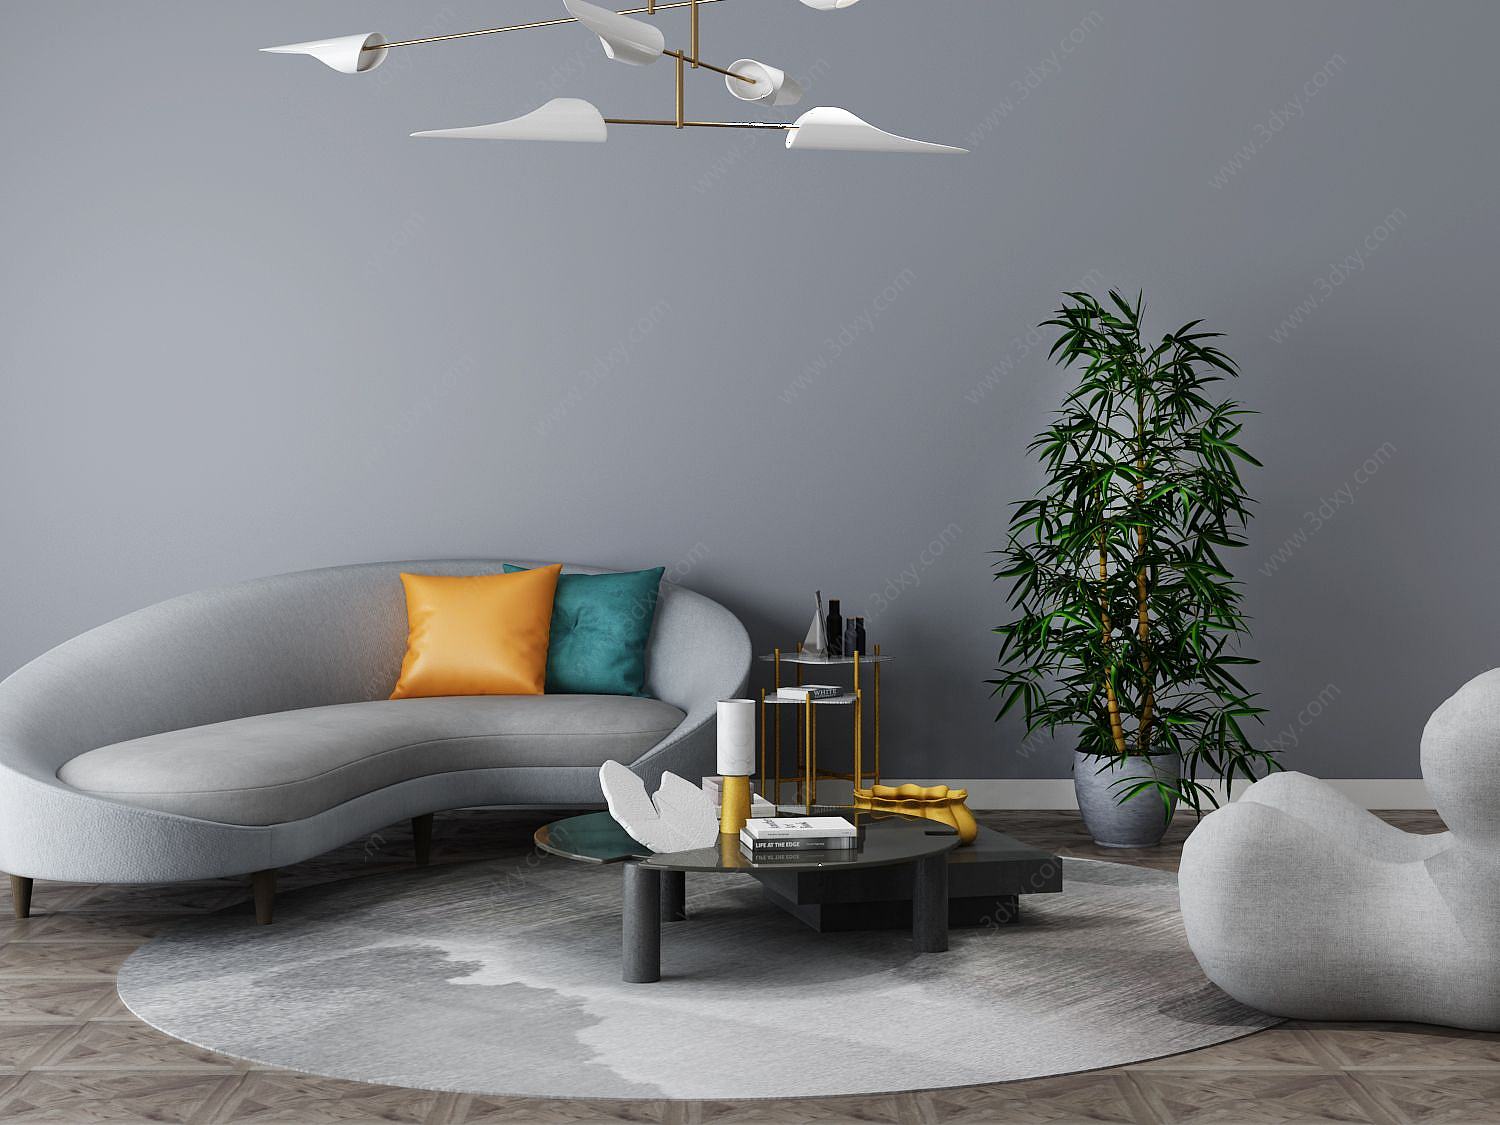 后现代客厅沙发茶几组合3D模型